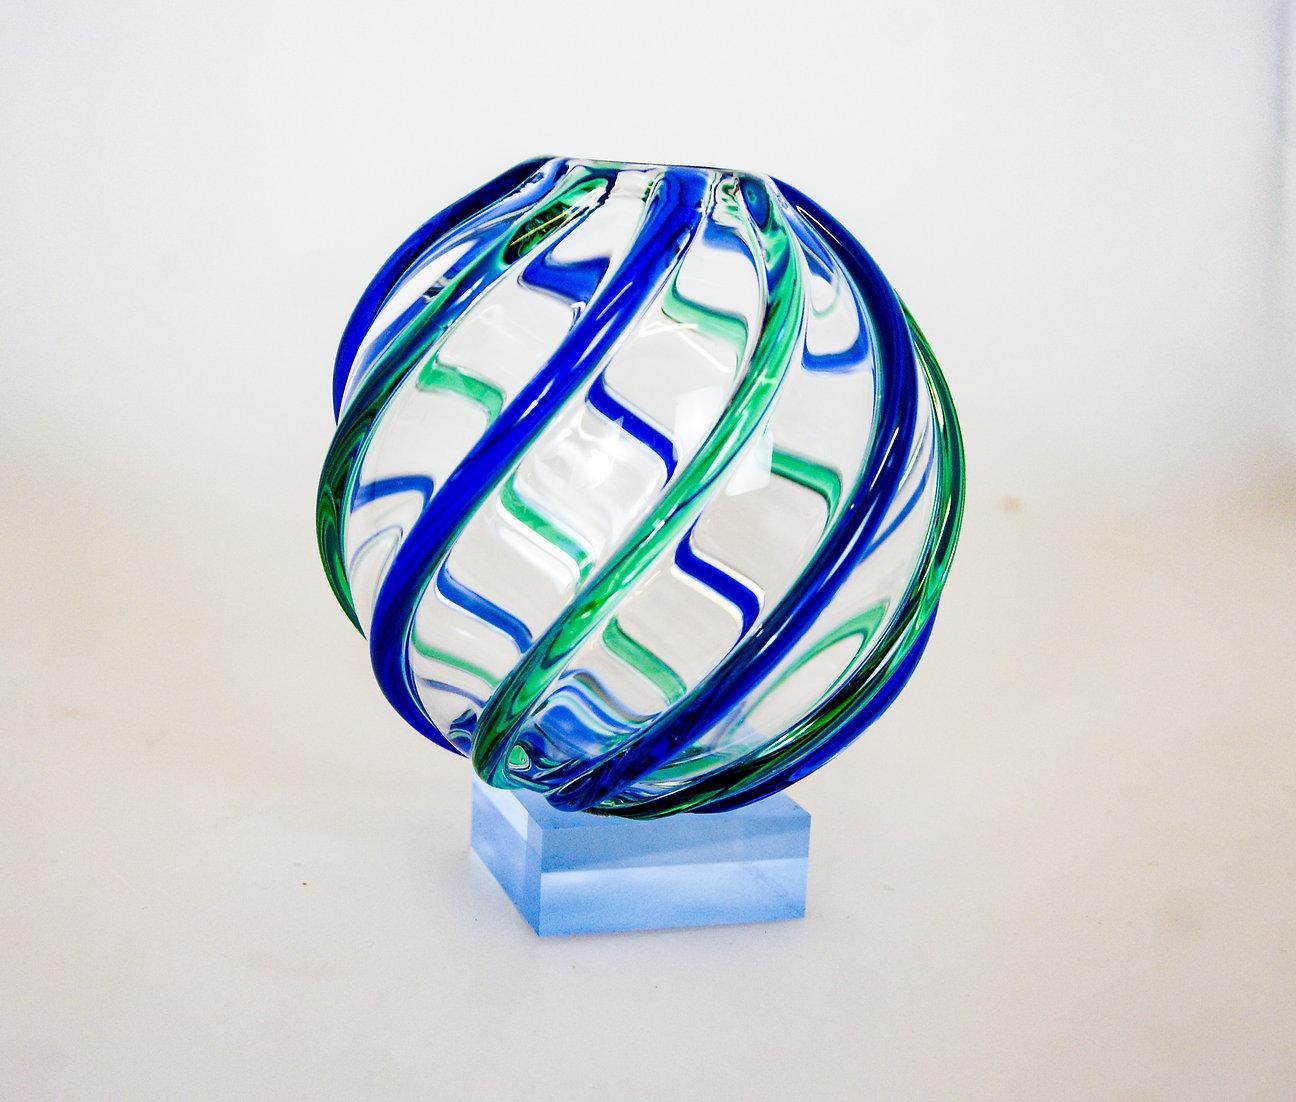 Hübsche Vase aus Murano-Glas von Archimede Seguso für Seguso.
Kleines, rundes, klobiges, mundgeblasenes Glas mit applizierten, gerippten blauen und grünen Streifen, die durchlaufen.
Sehr kompliziert geblasen mit allen Streifen in Folge, ziemlich